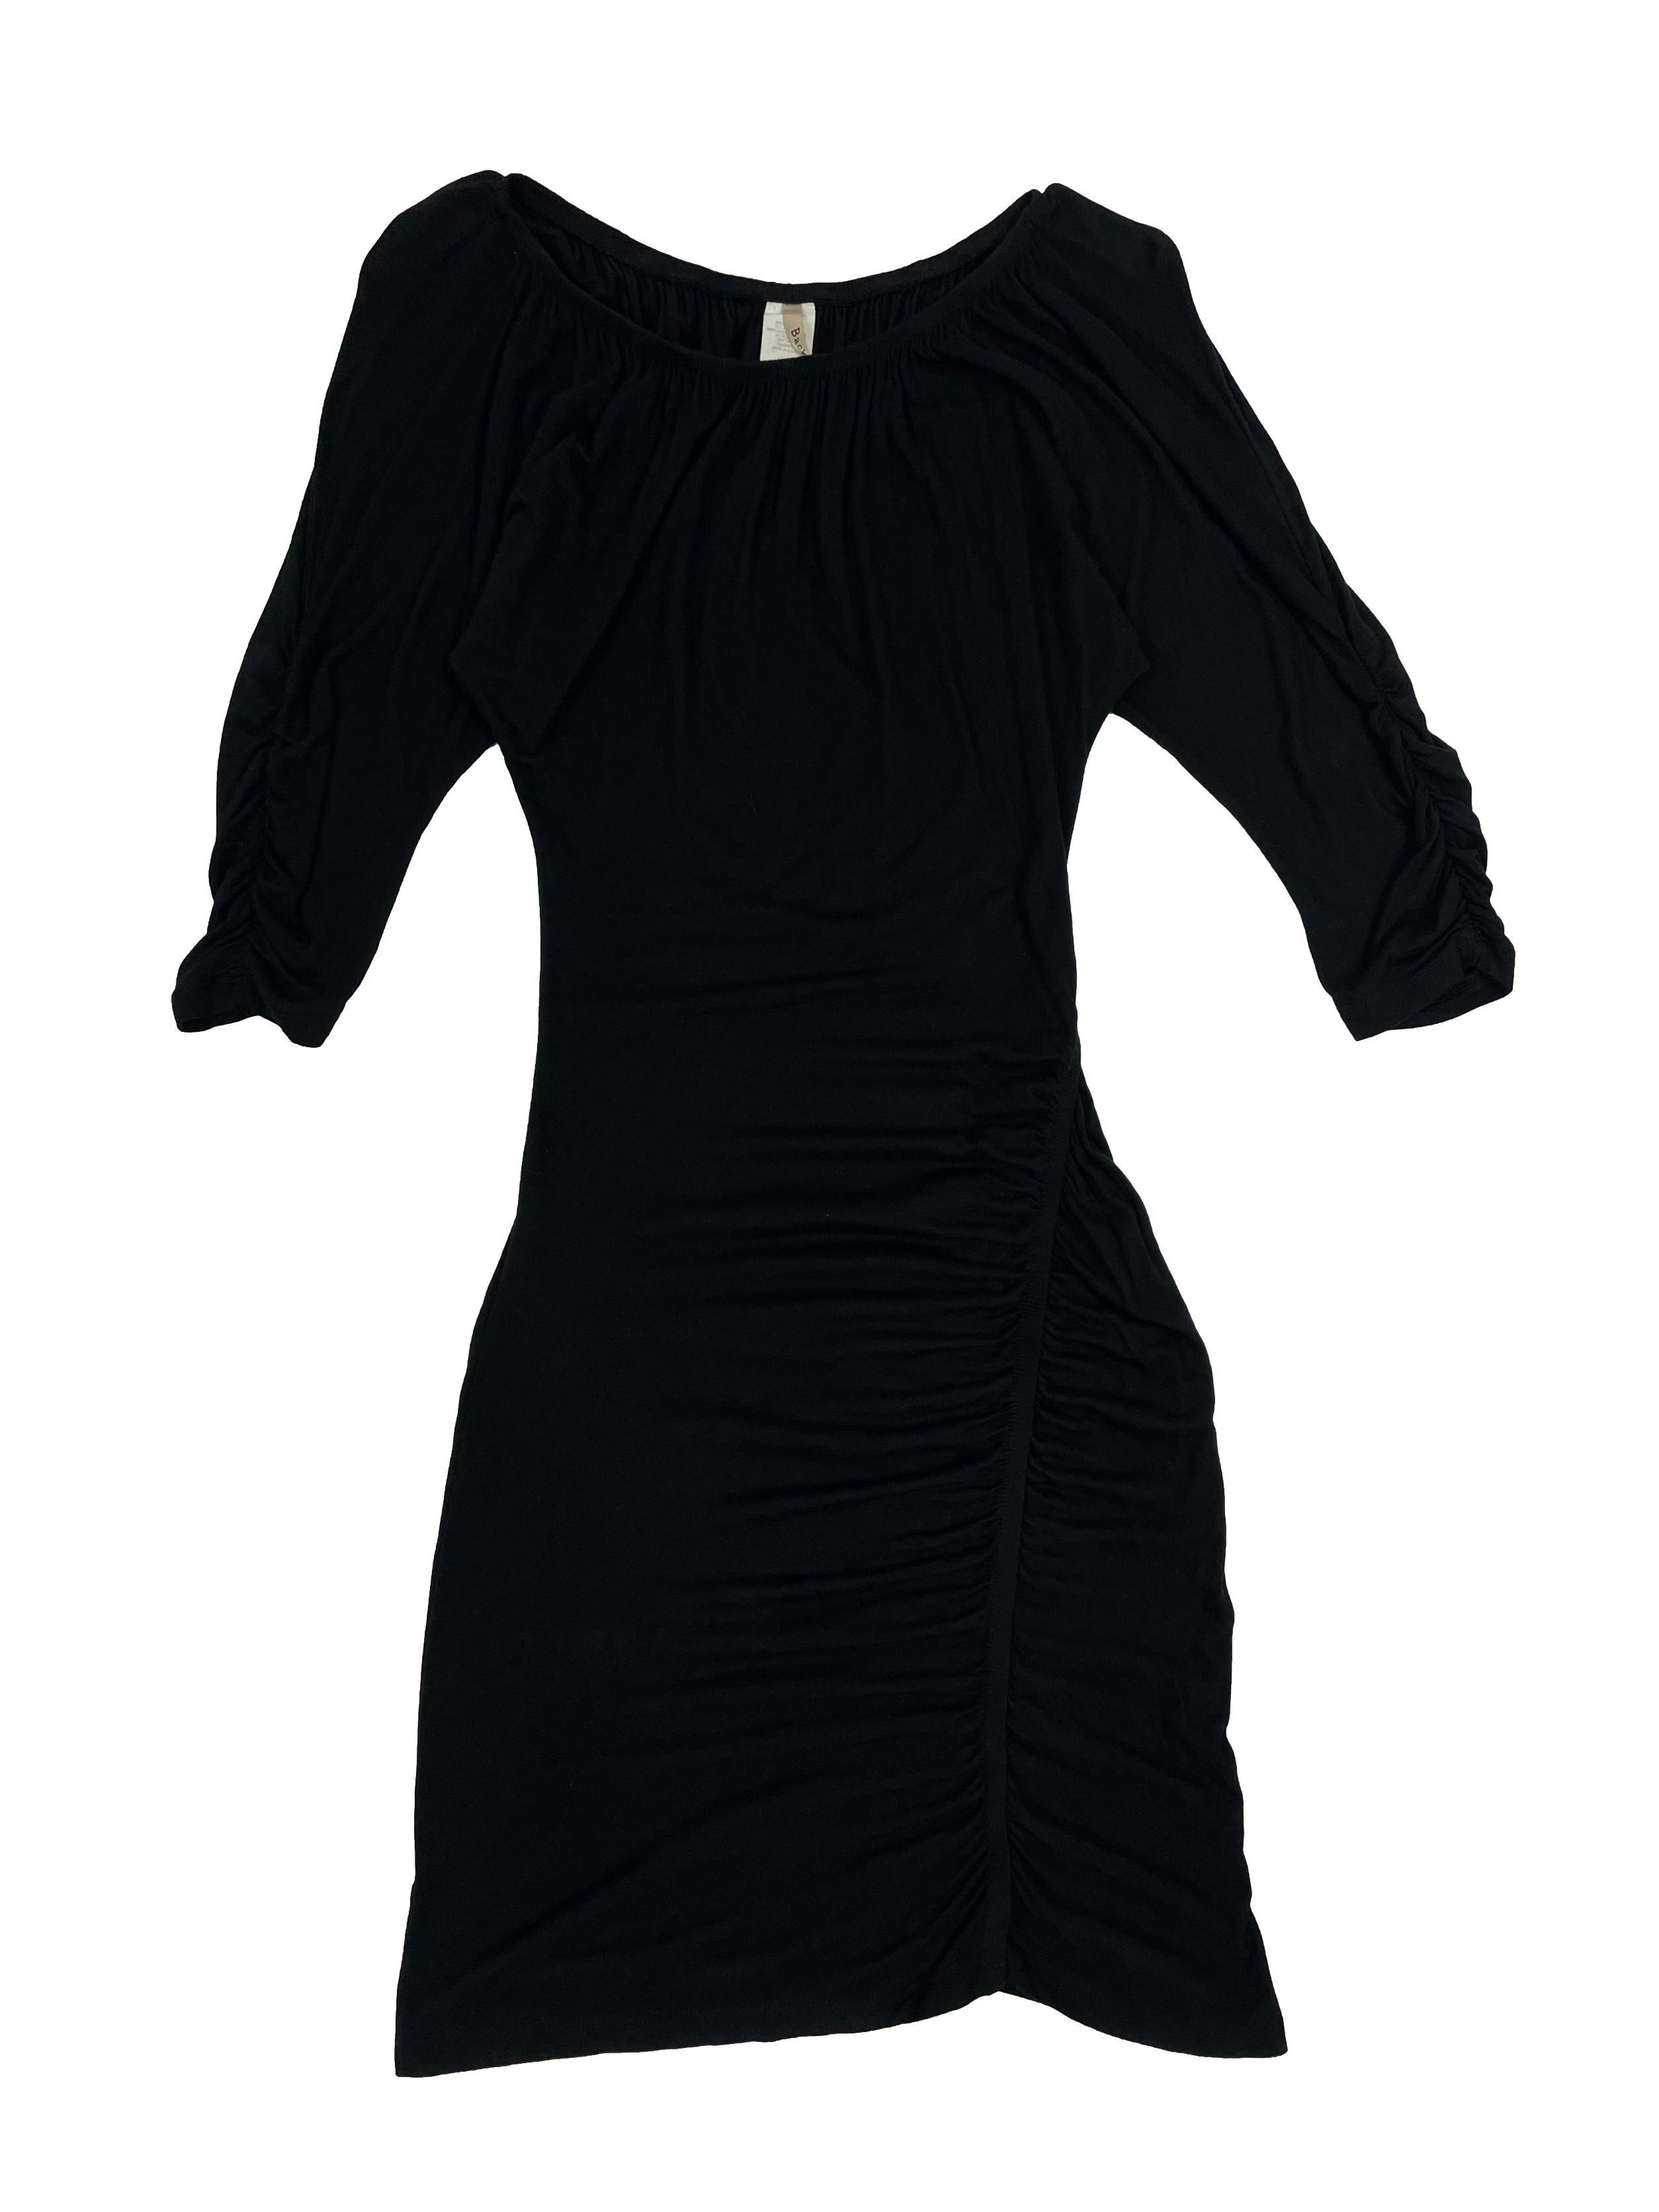 Vestido negro de tela stretch, escote elasticado, mangas murciélago y fruncido lateral. Cintura 56cm sin estirar, Largo 100cm.